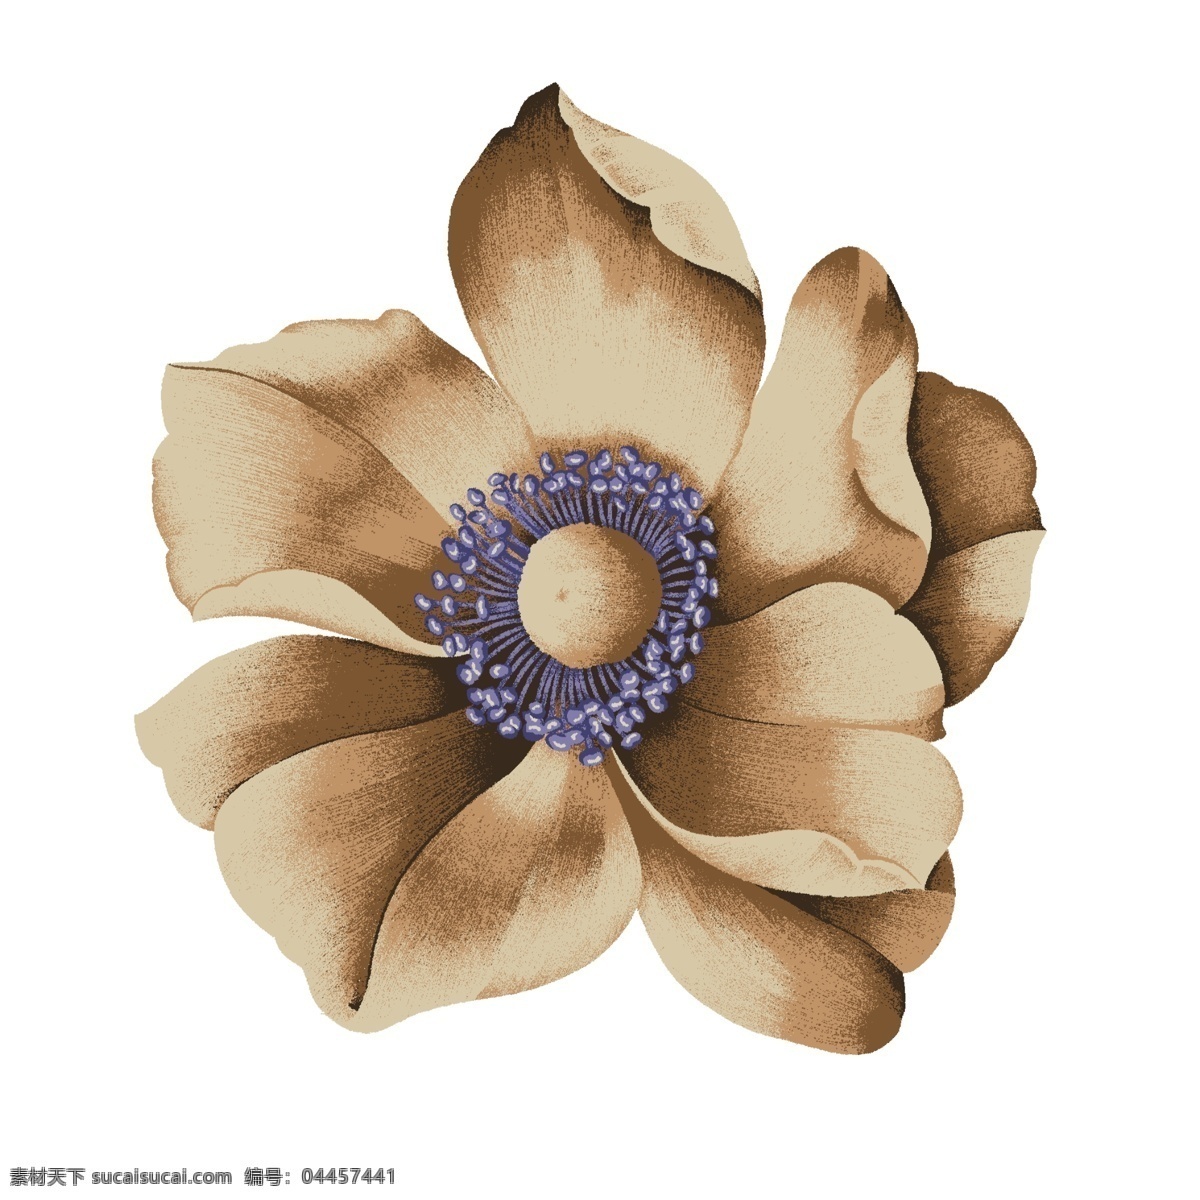 手绘花卉 电脑花卉 创意花卉 抽象花卉 高清花卉 印花素材 服装图案素材 家纺图案素材